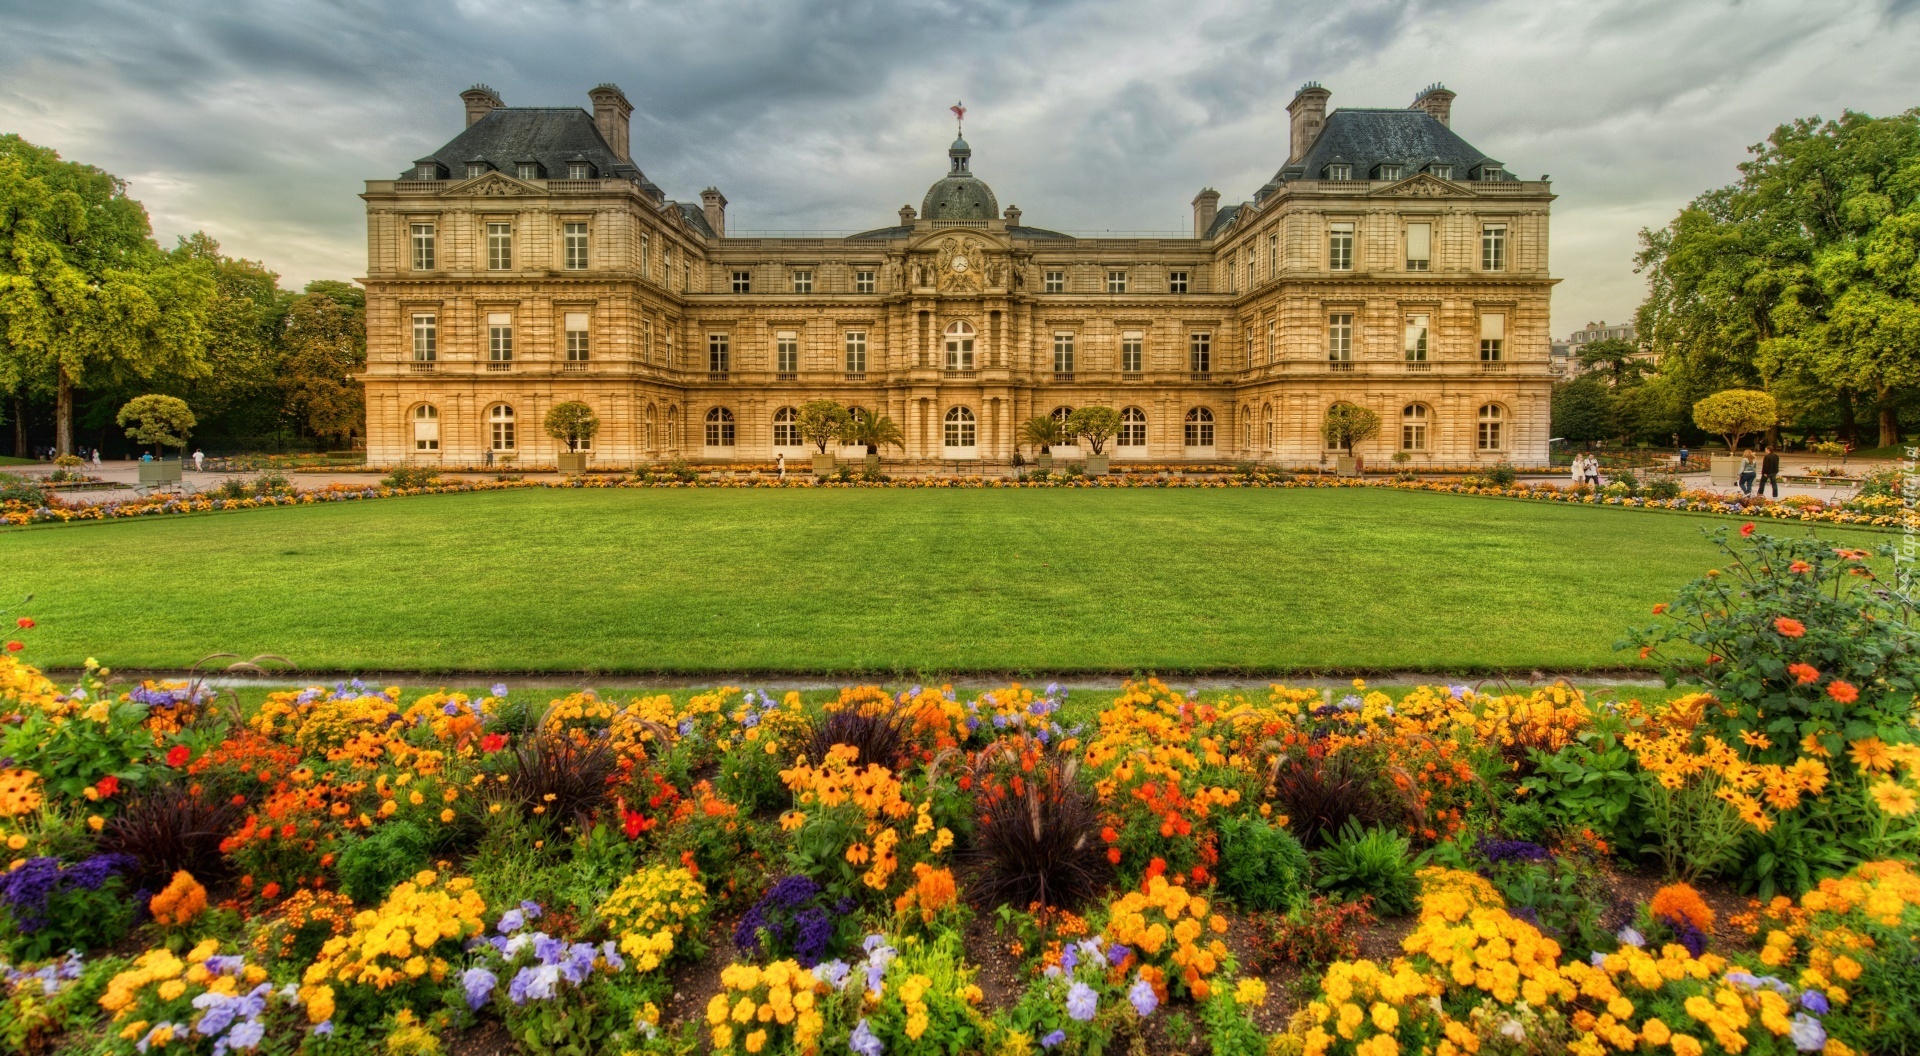 Zamek, Ogród, Paryż